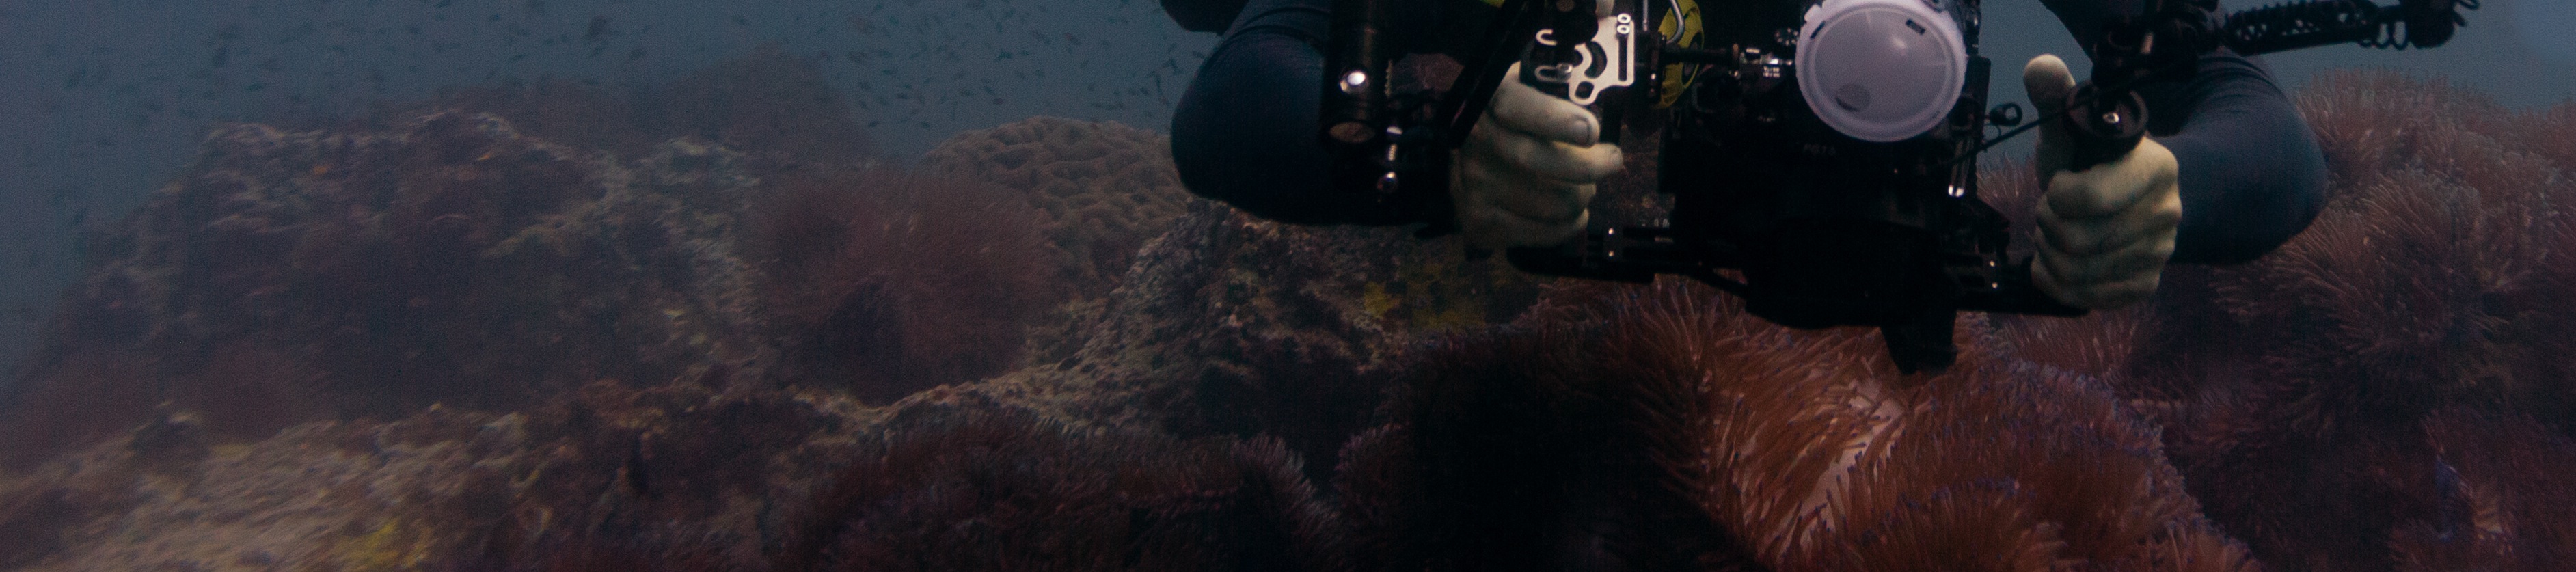 帕岸島 PADI 五星潛水中心進階開放水域潛水員課程